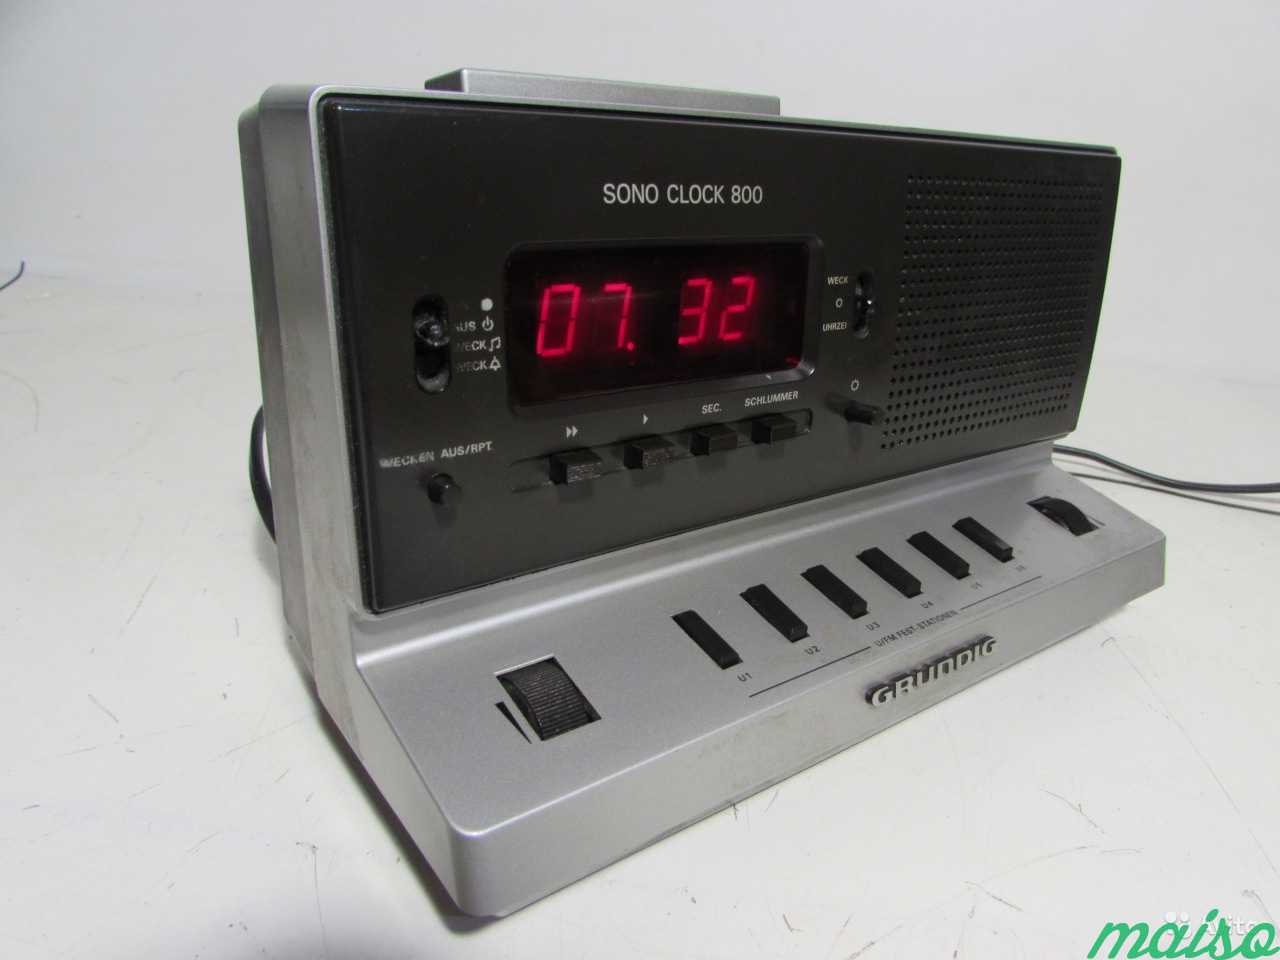 Grundig Sono Clock 800 Радио+Часы в Санкт-Петербурге. Фото 2